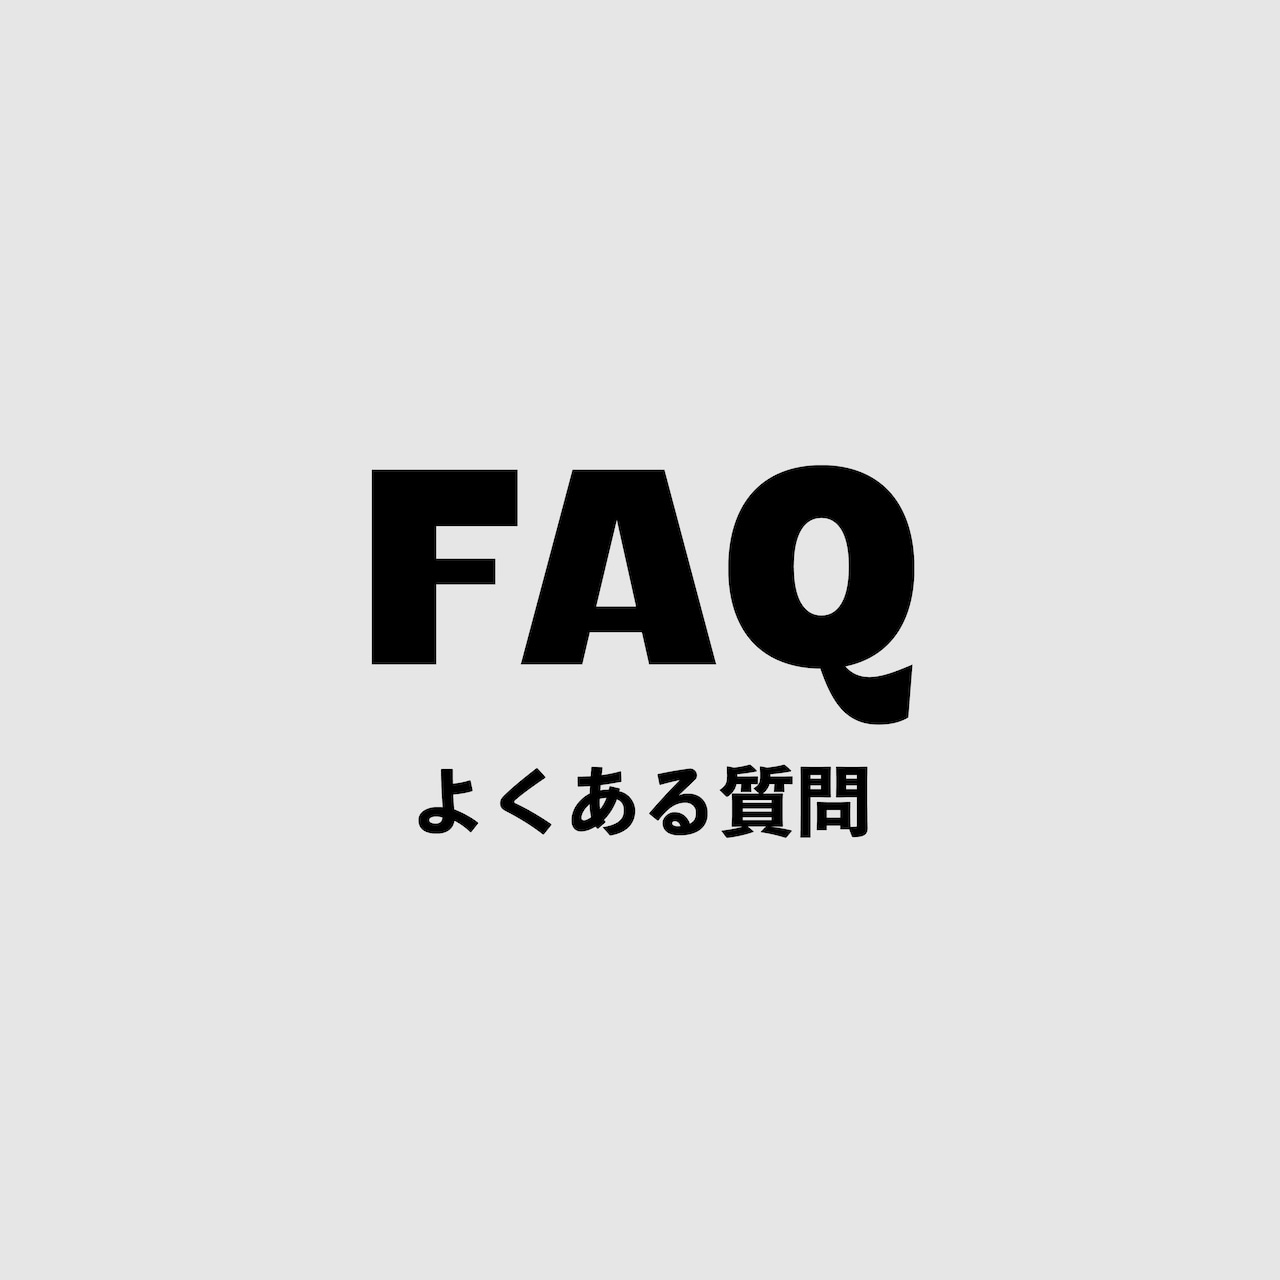 FAQ -よくある質問 -